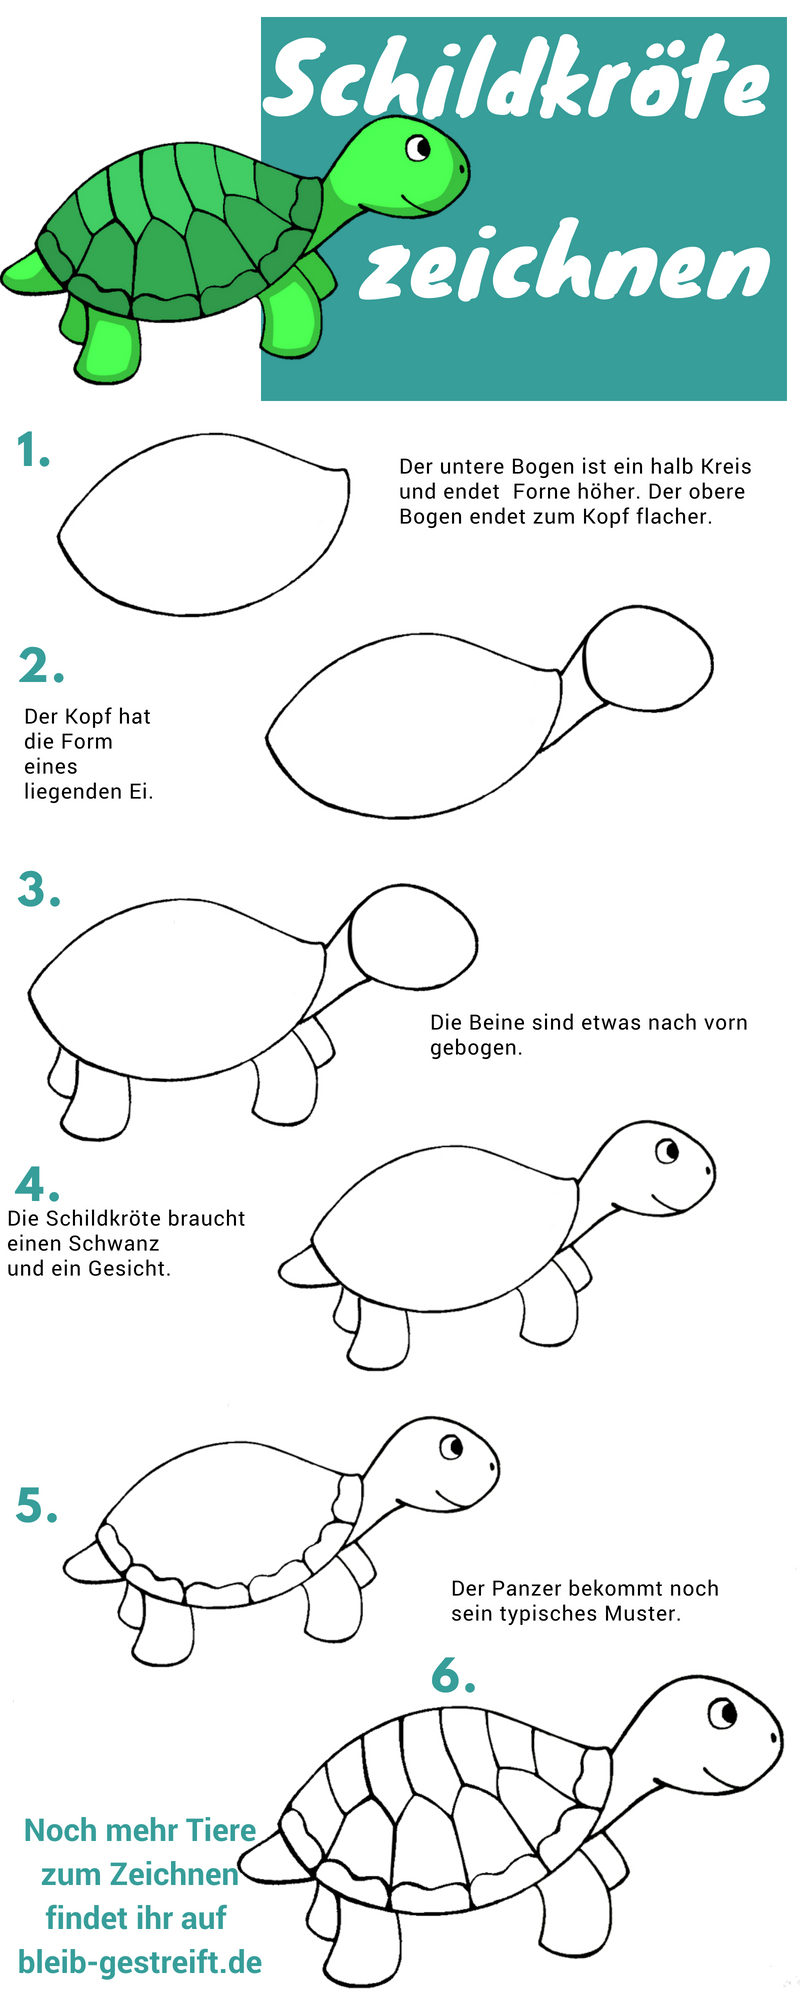 Schildkröte Zeichnen Lernen - Eine Anleitung In 6 Schritten über Zeichen Bilder Für Kinder,